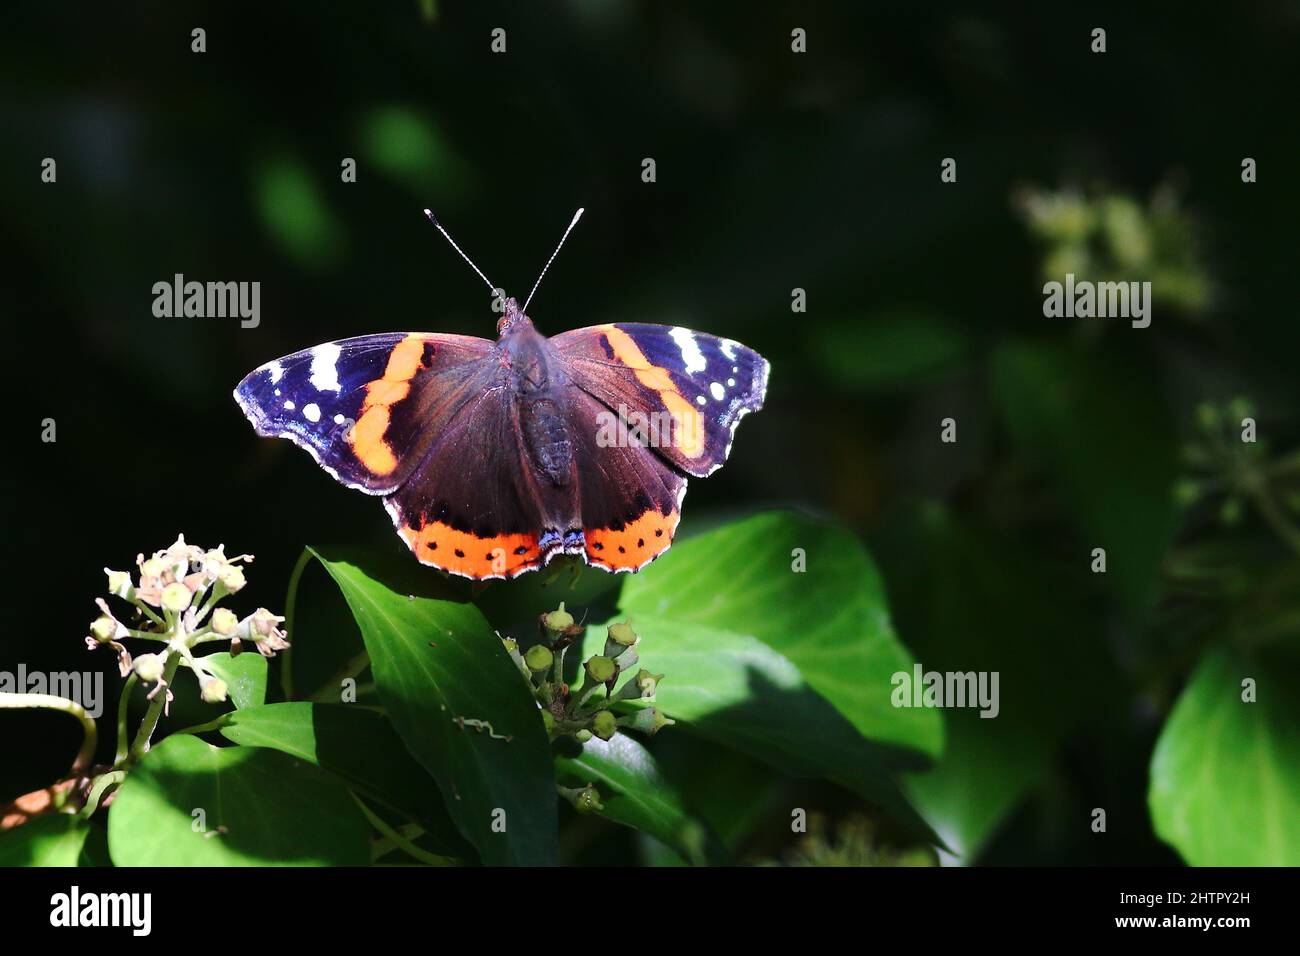 Roter Admiral, Vanessa atalanta, ein britischer Schmetterling mit wunderschönen Flügeln - rot, schwarz und braun. Eine der farbenprächtigsten Insekten Großbritanniens. Stockfoto